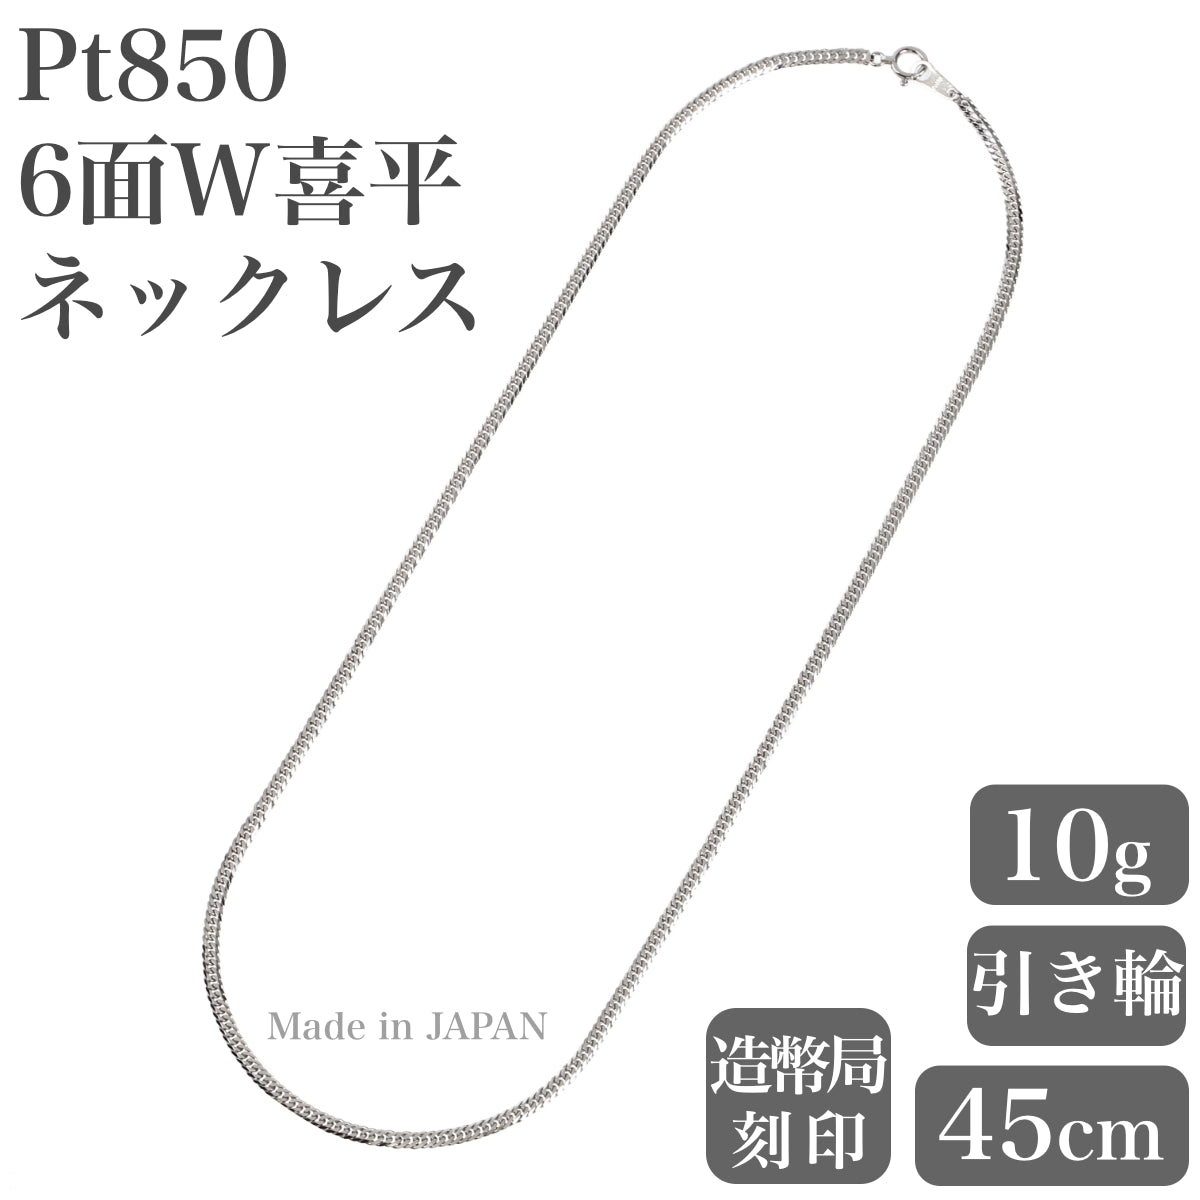 【好評セール】プラチナ喜平ネックレス　pt850 50cm 10g 鑑定済 アクセサリー